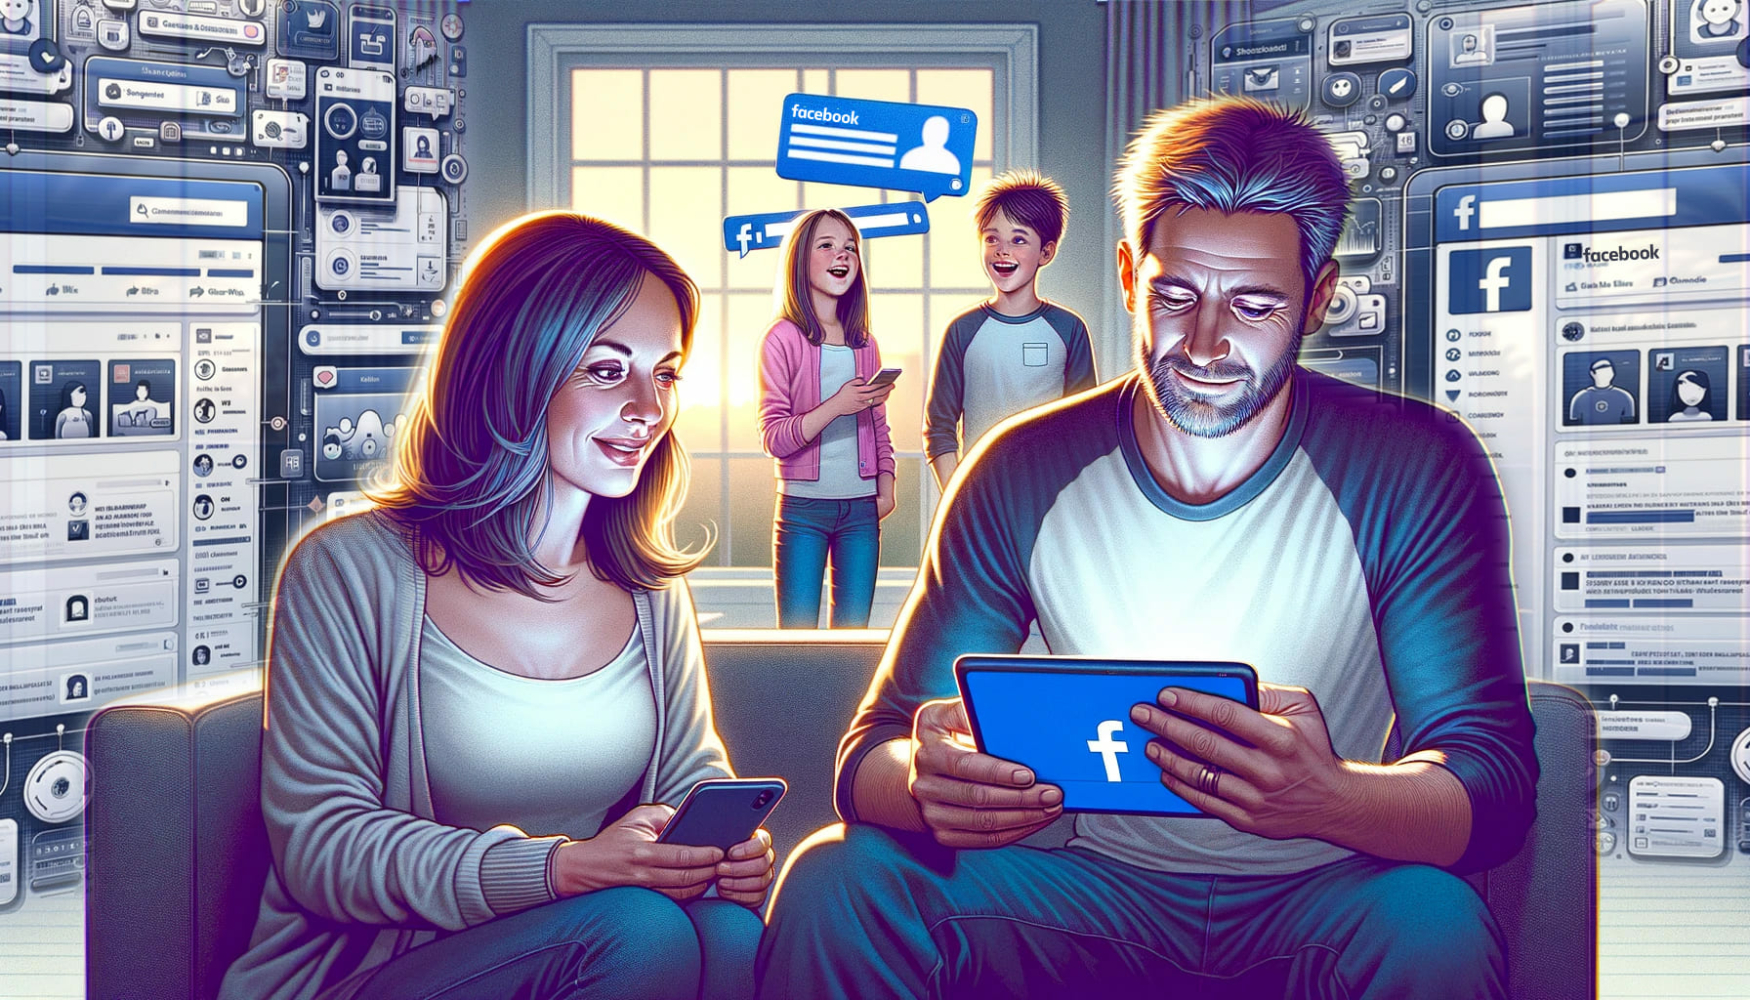 En el primer plano de la imagen, dos padres sostienen aparatos y los miran utilizando la función de control parental de Facebook; en el fondo, dos niños ríen y sostienen sus teléfonos, y en las paredes de la habitación hay imágenes de información de Facebook